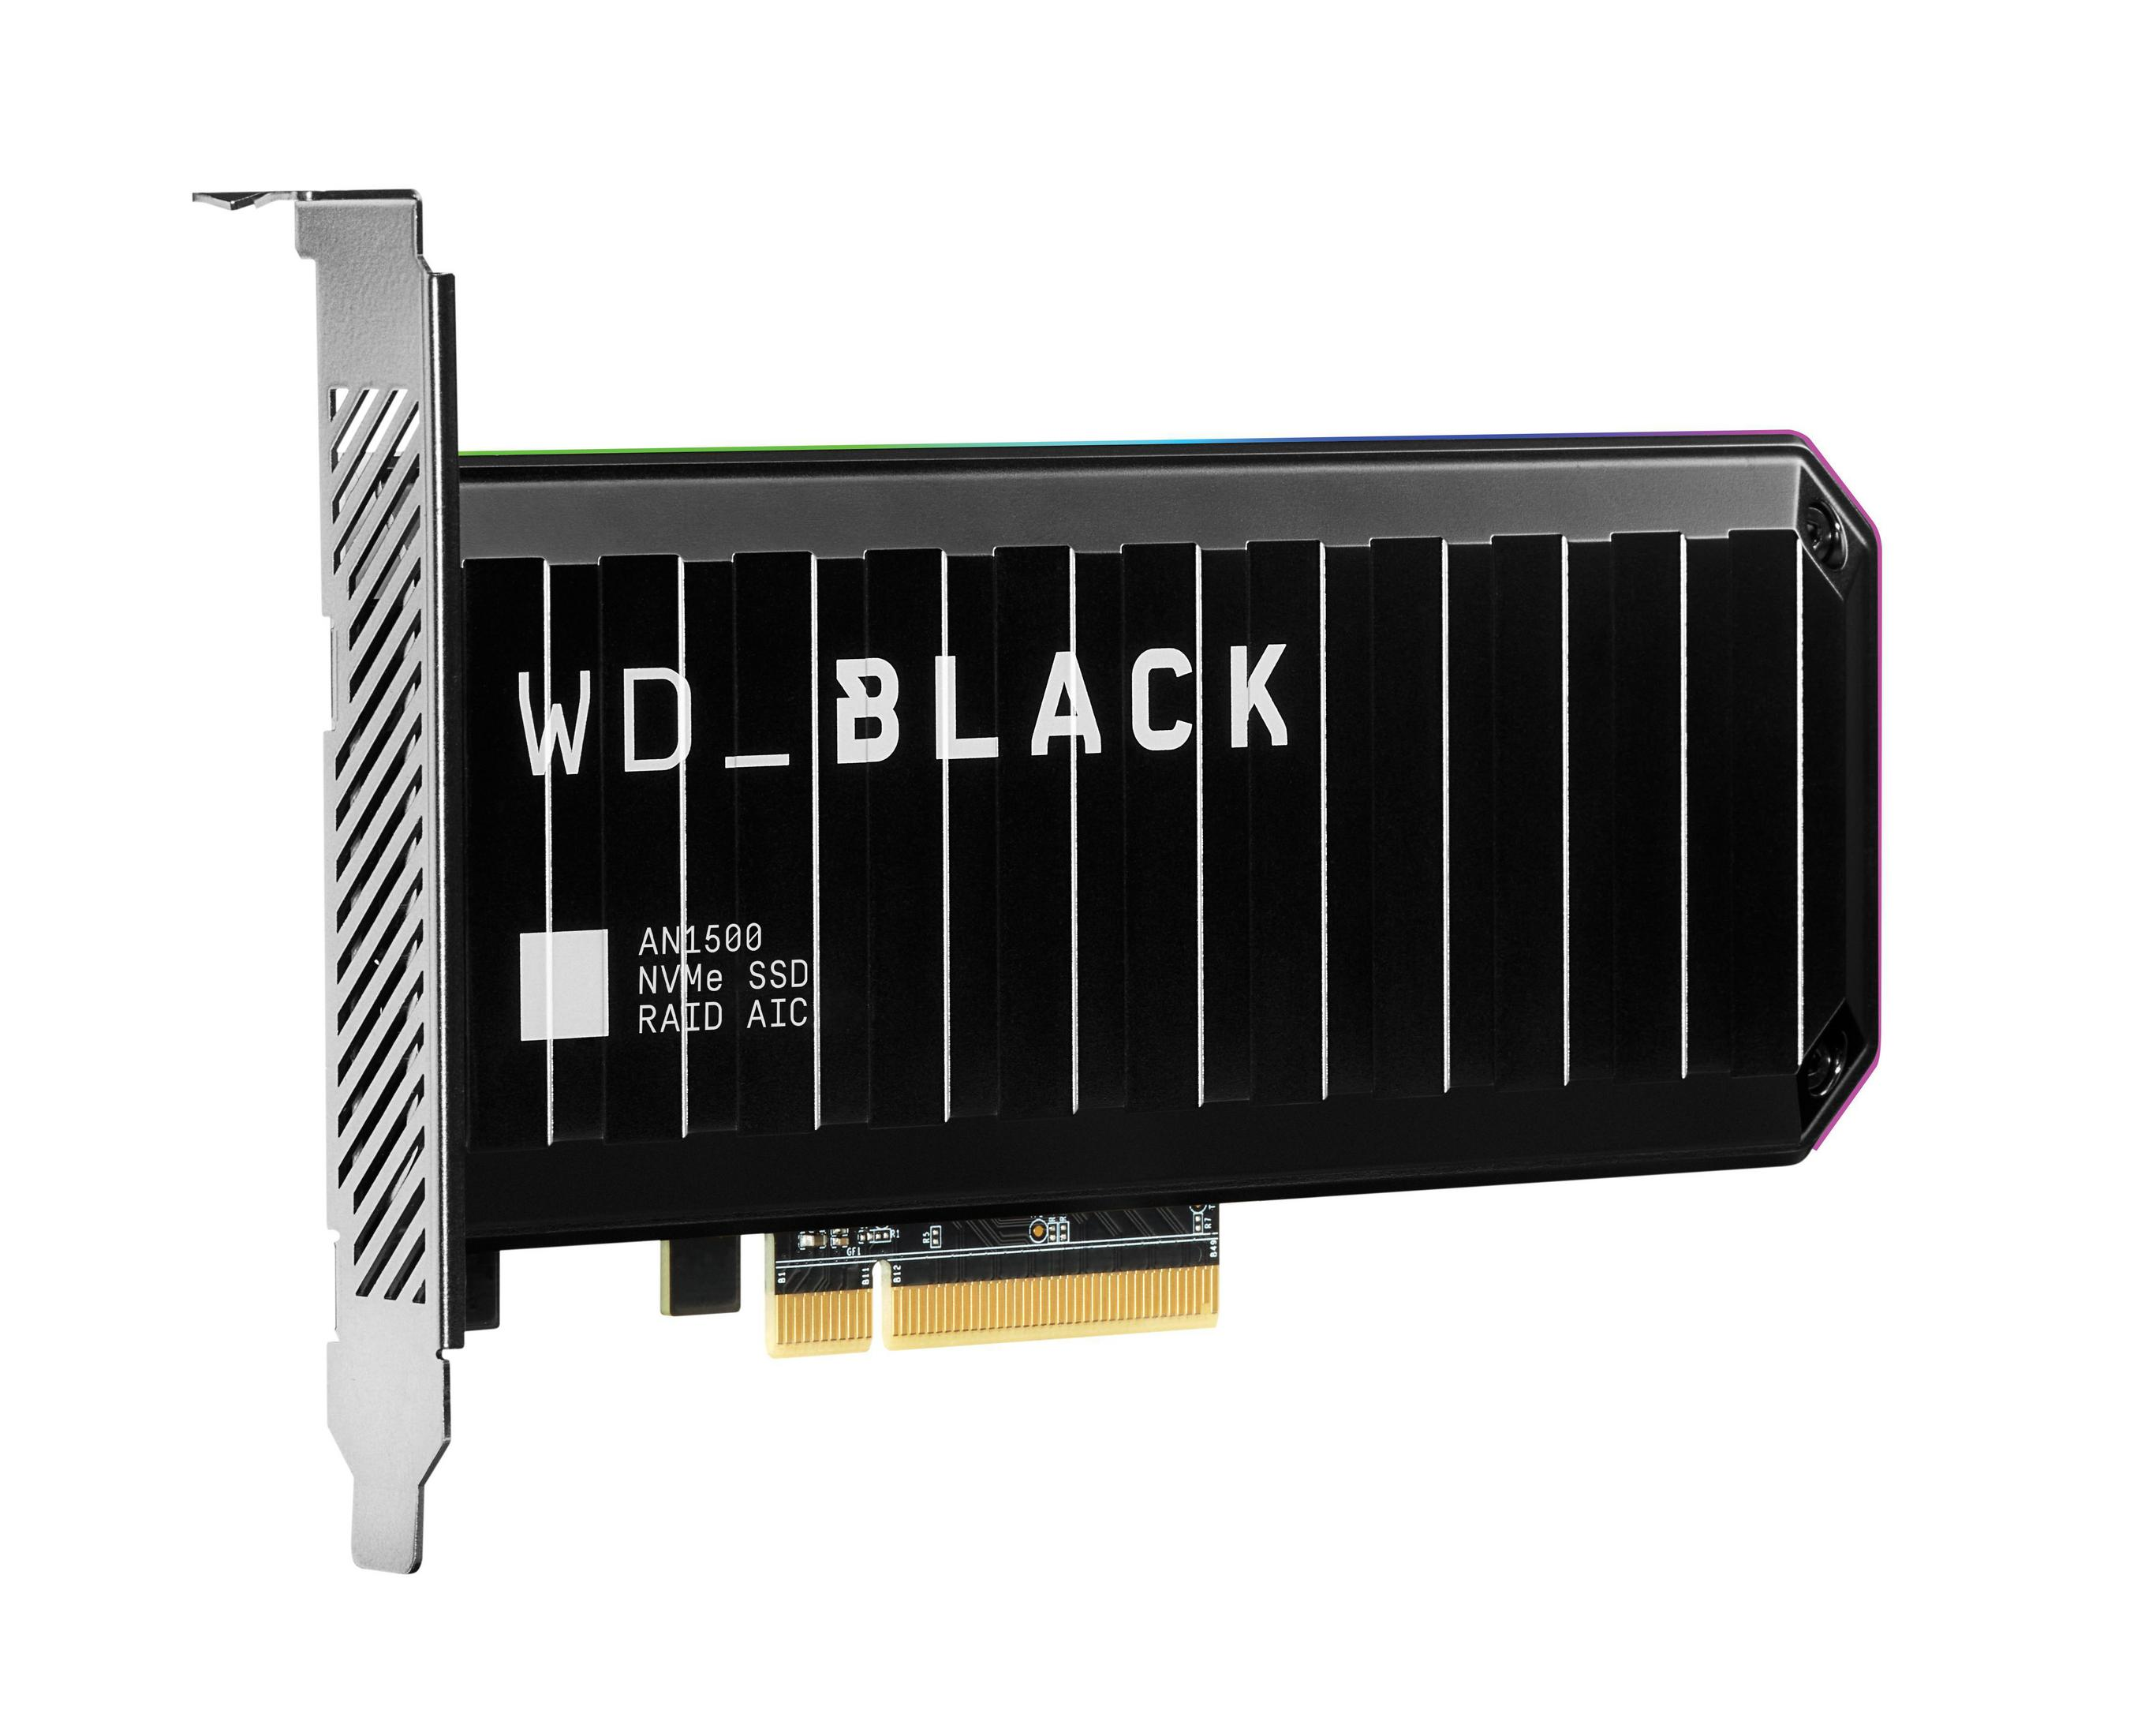 WD WDS100T1X0L WD BLACK TB, AN1500 1 PCIE intern 1TB, SSD